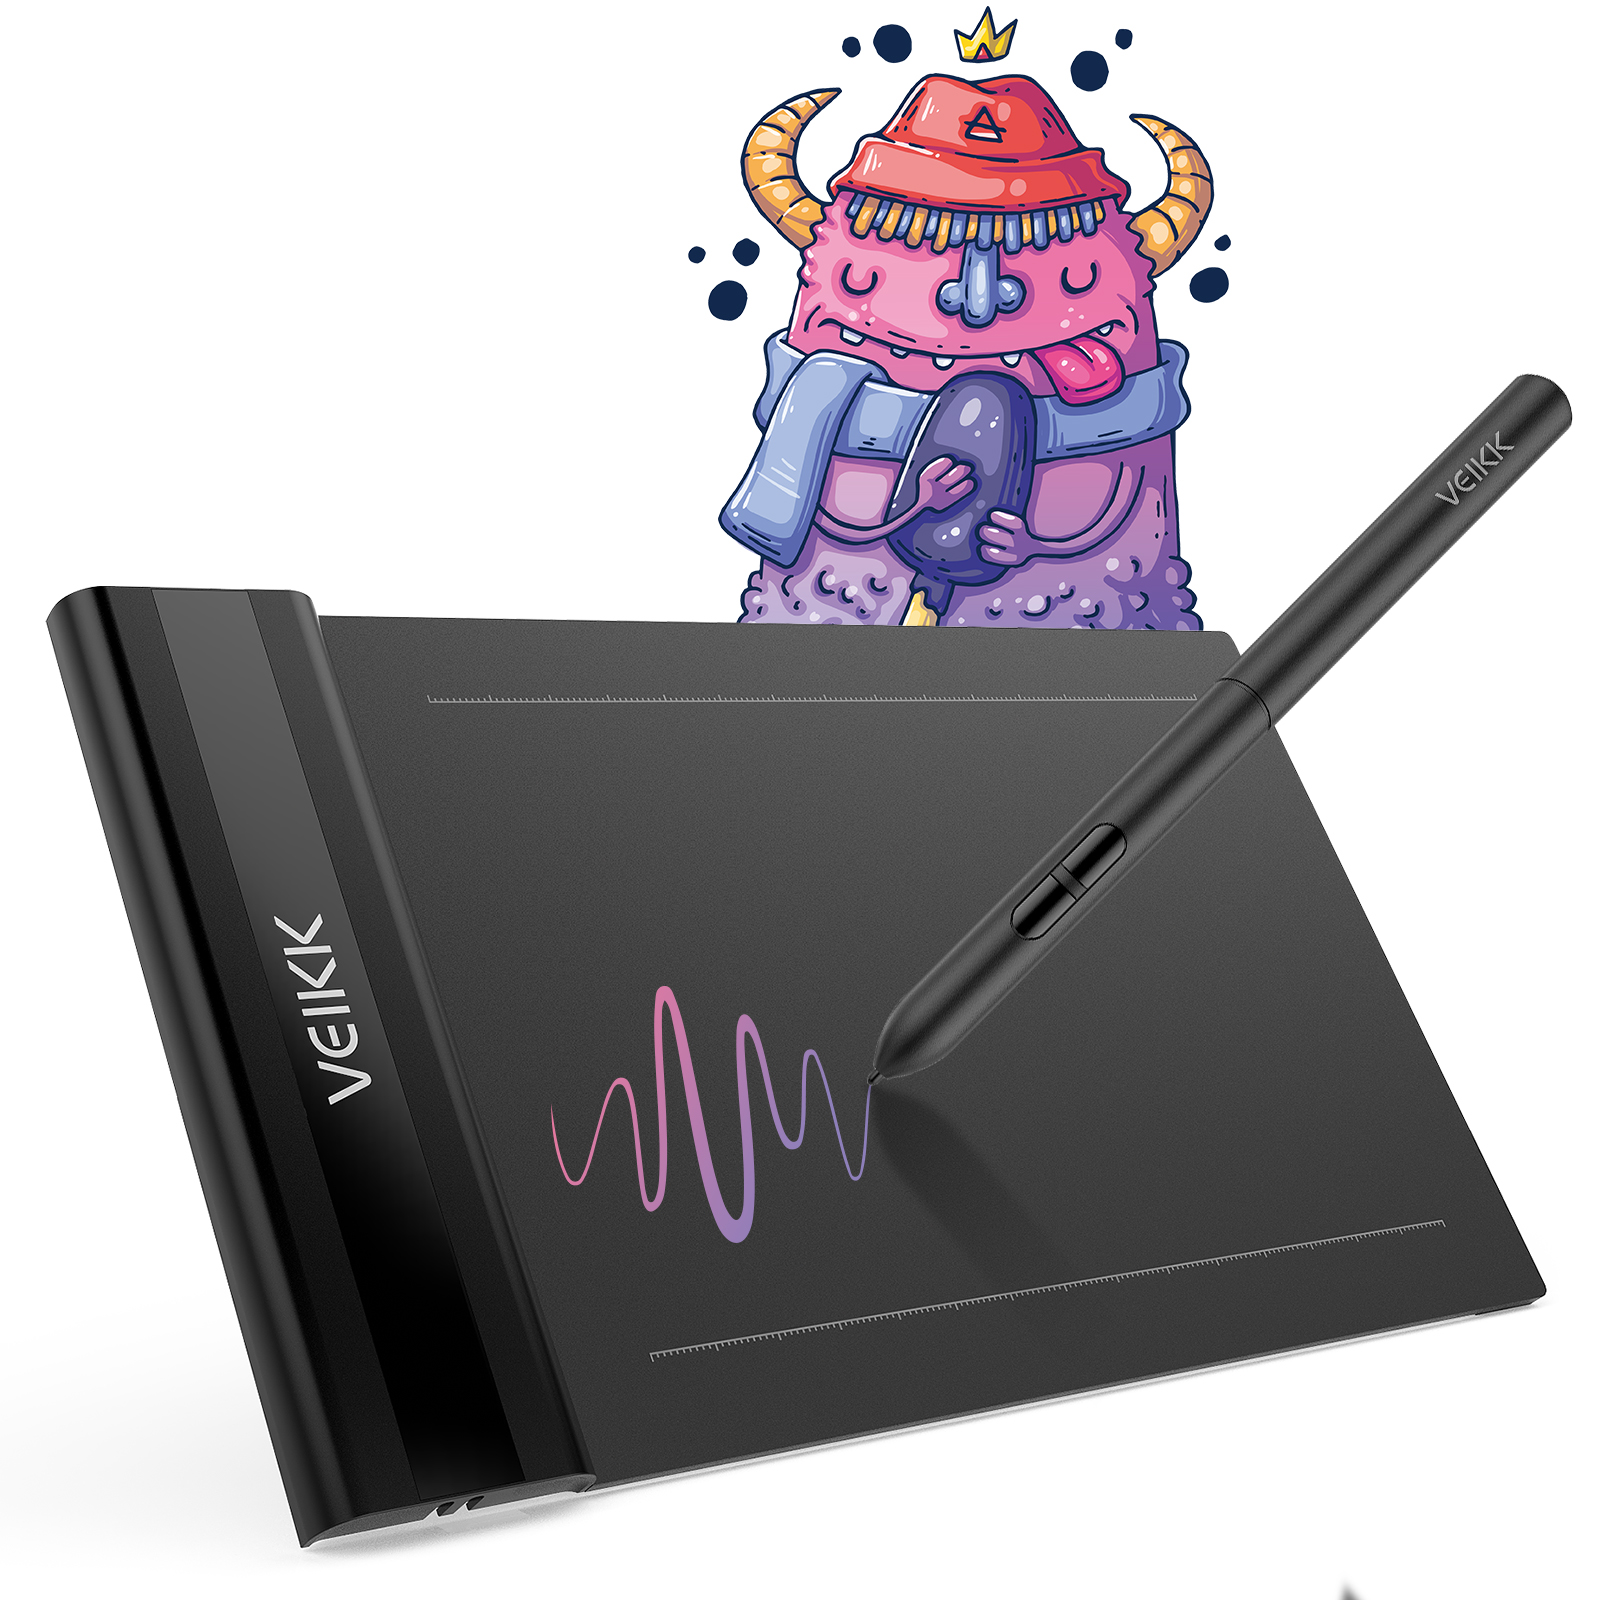 VEIKK Creator Pop S640 Pen Tablet & Digital Drawing Art Tablet